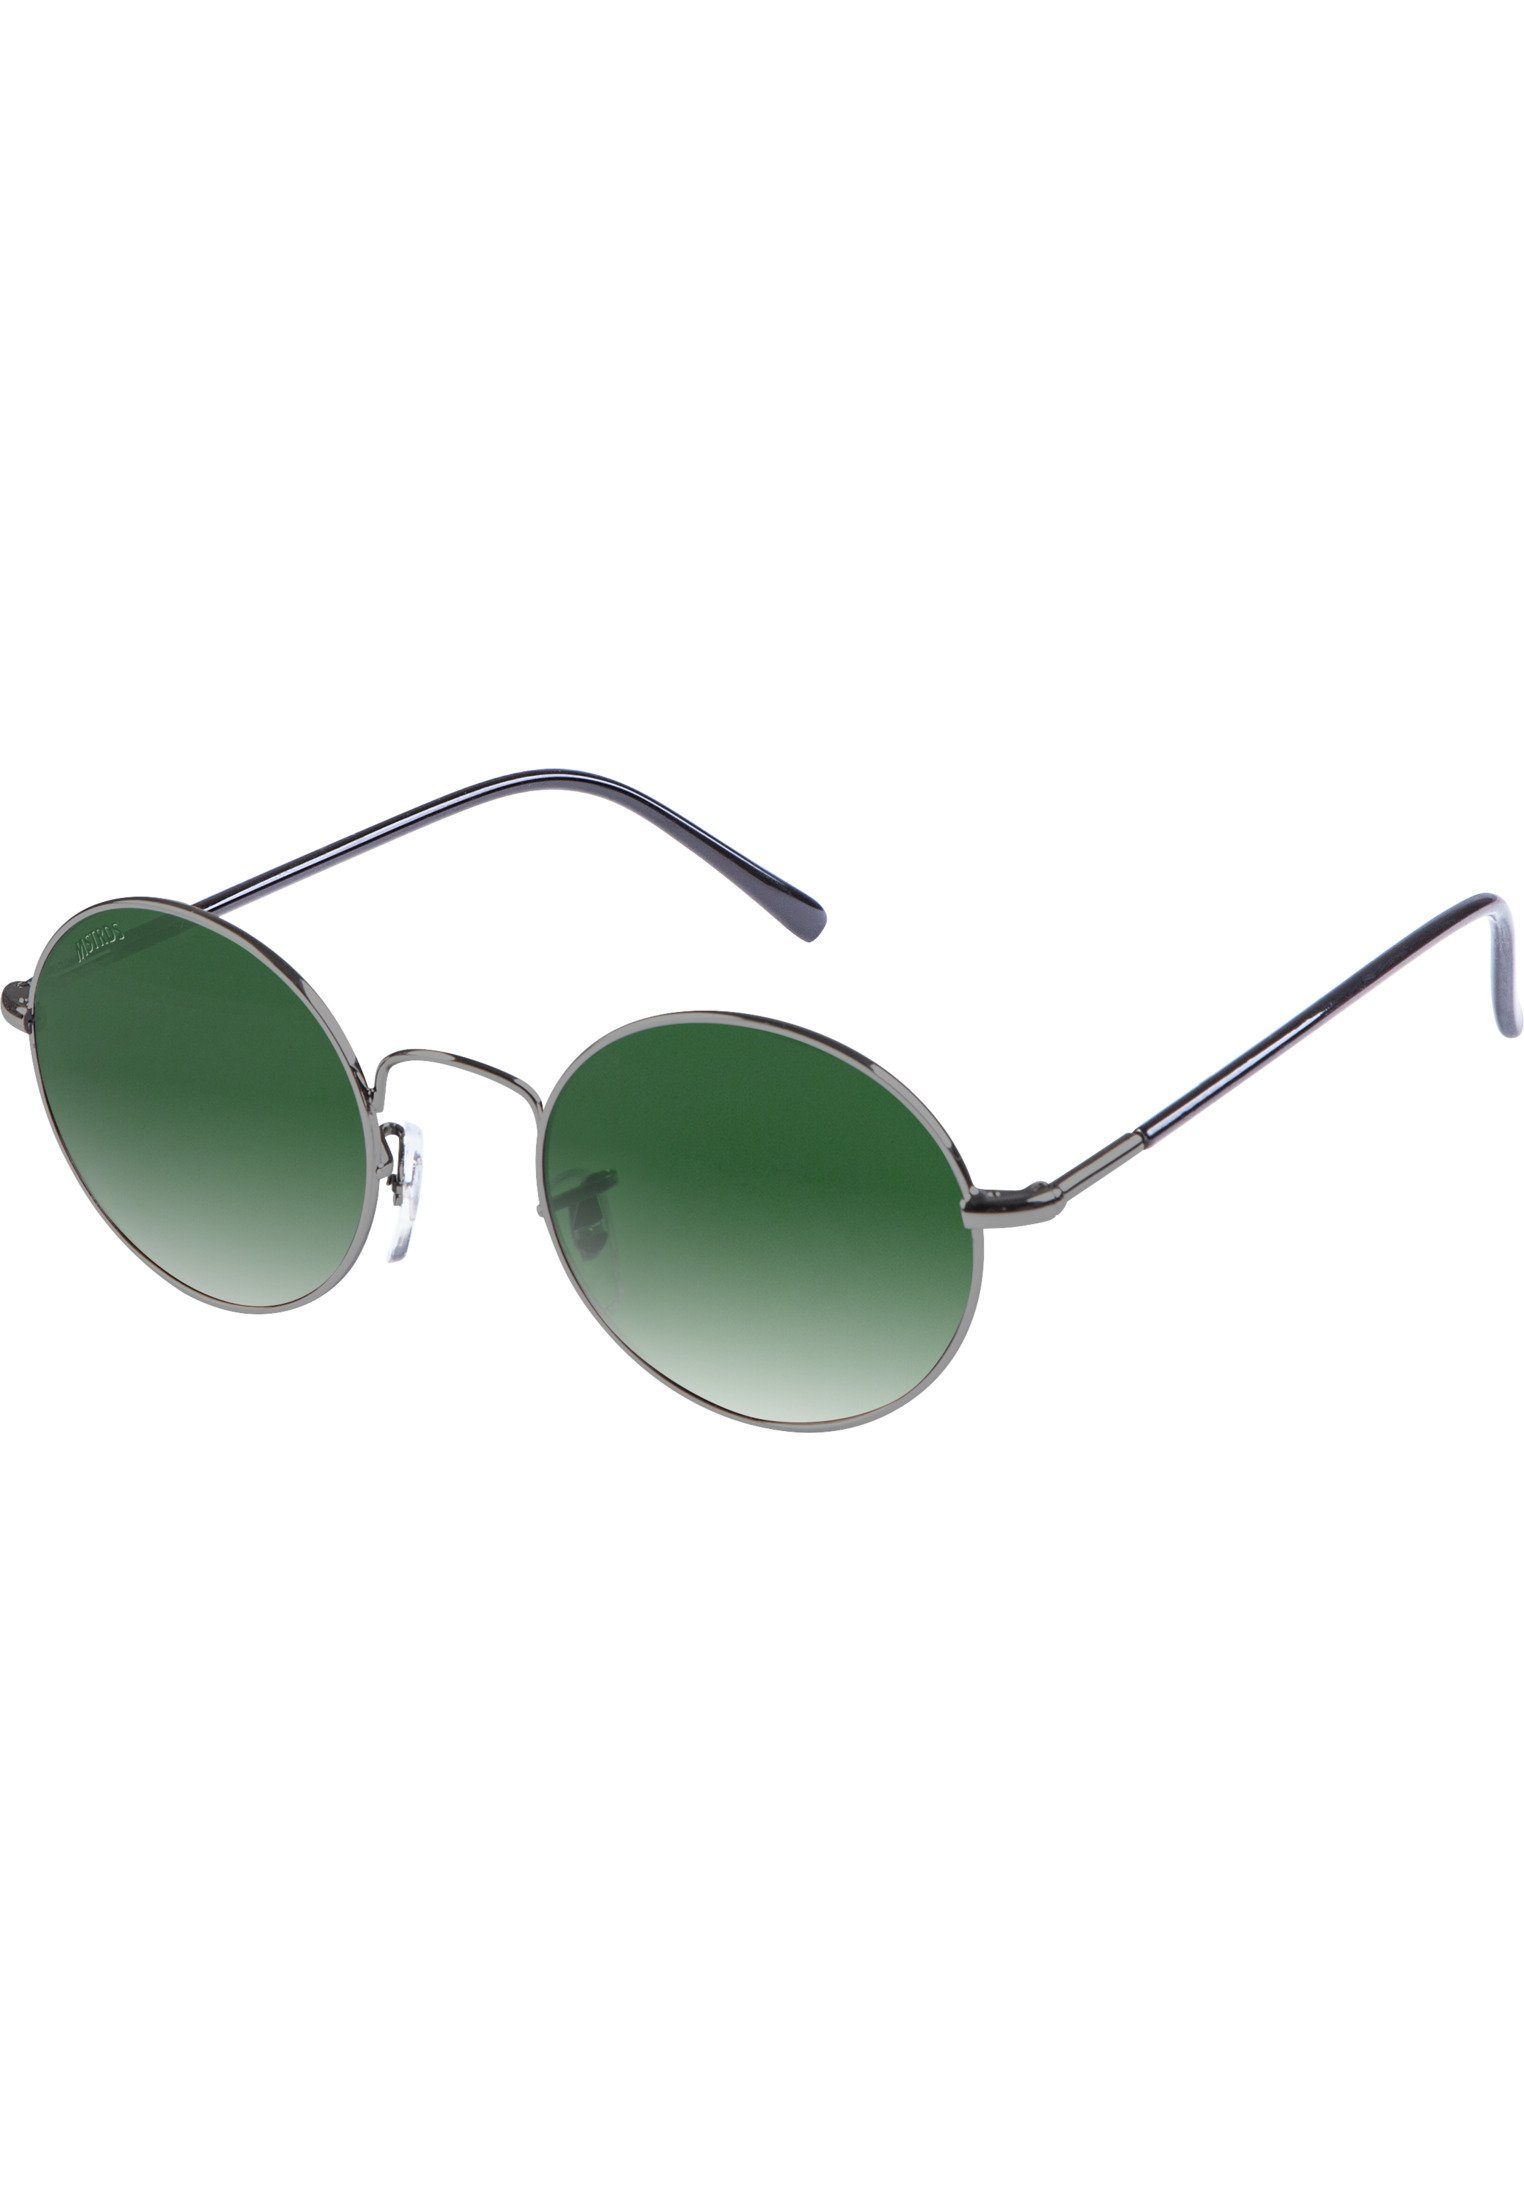 MSTRDS Sonnenbrille Accessoires Sunglasses Flower